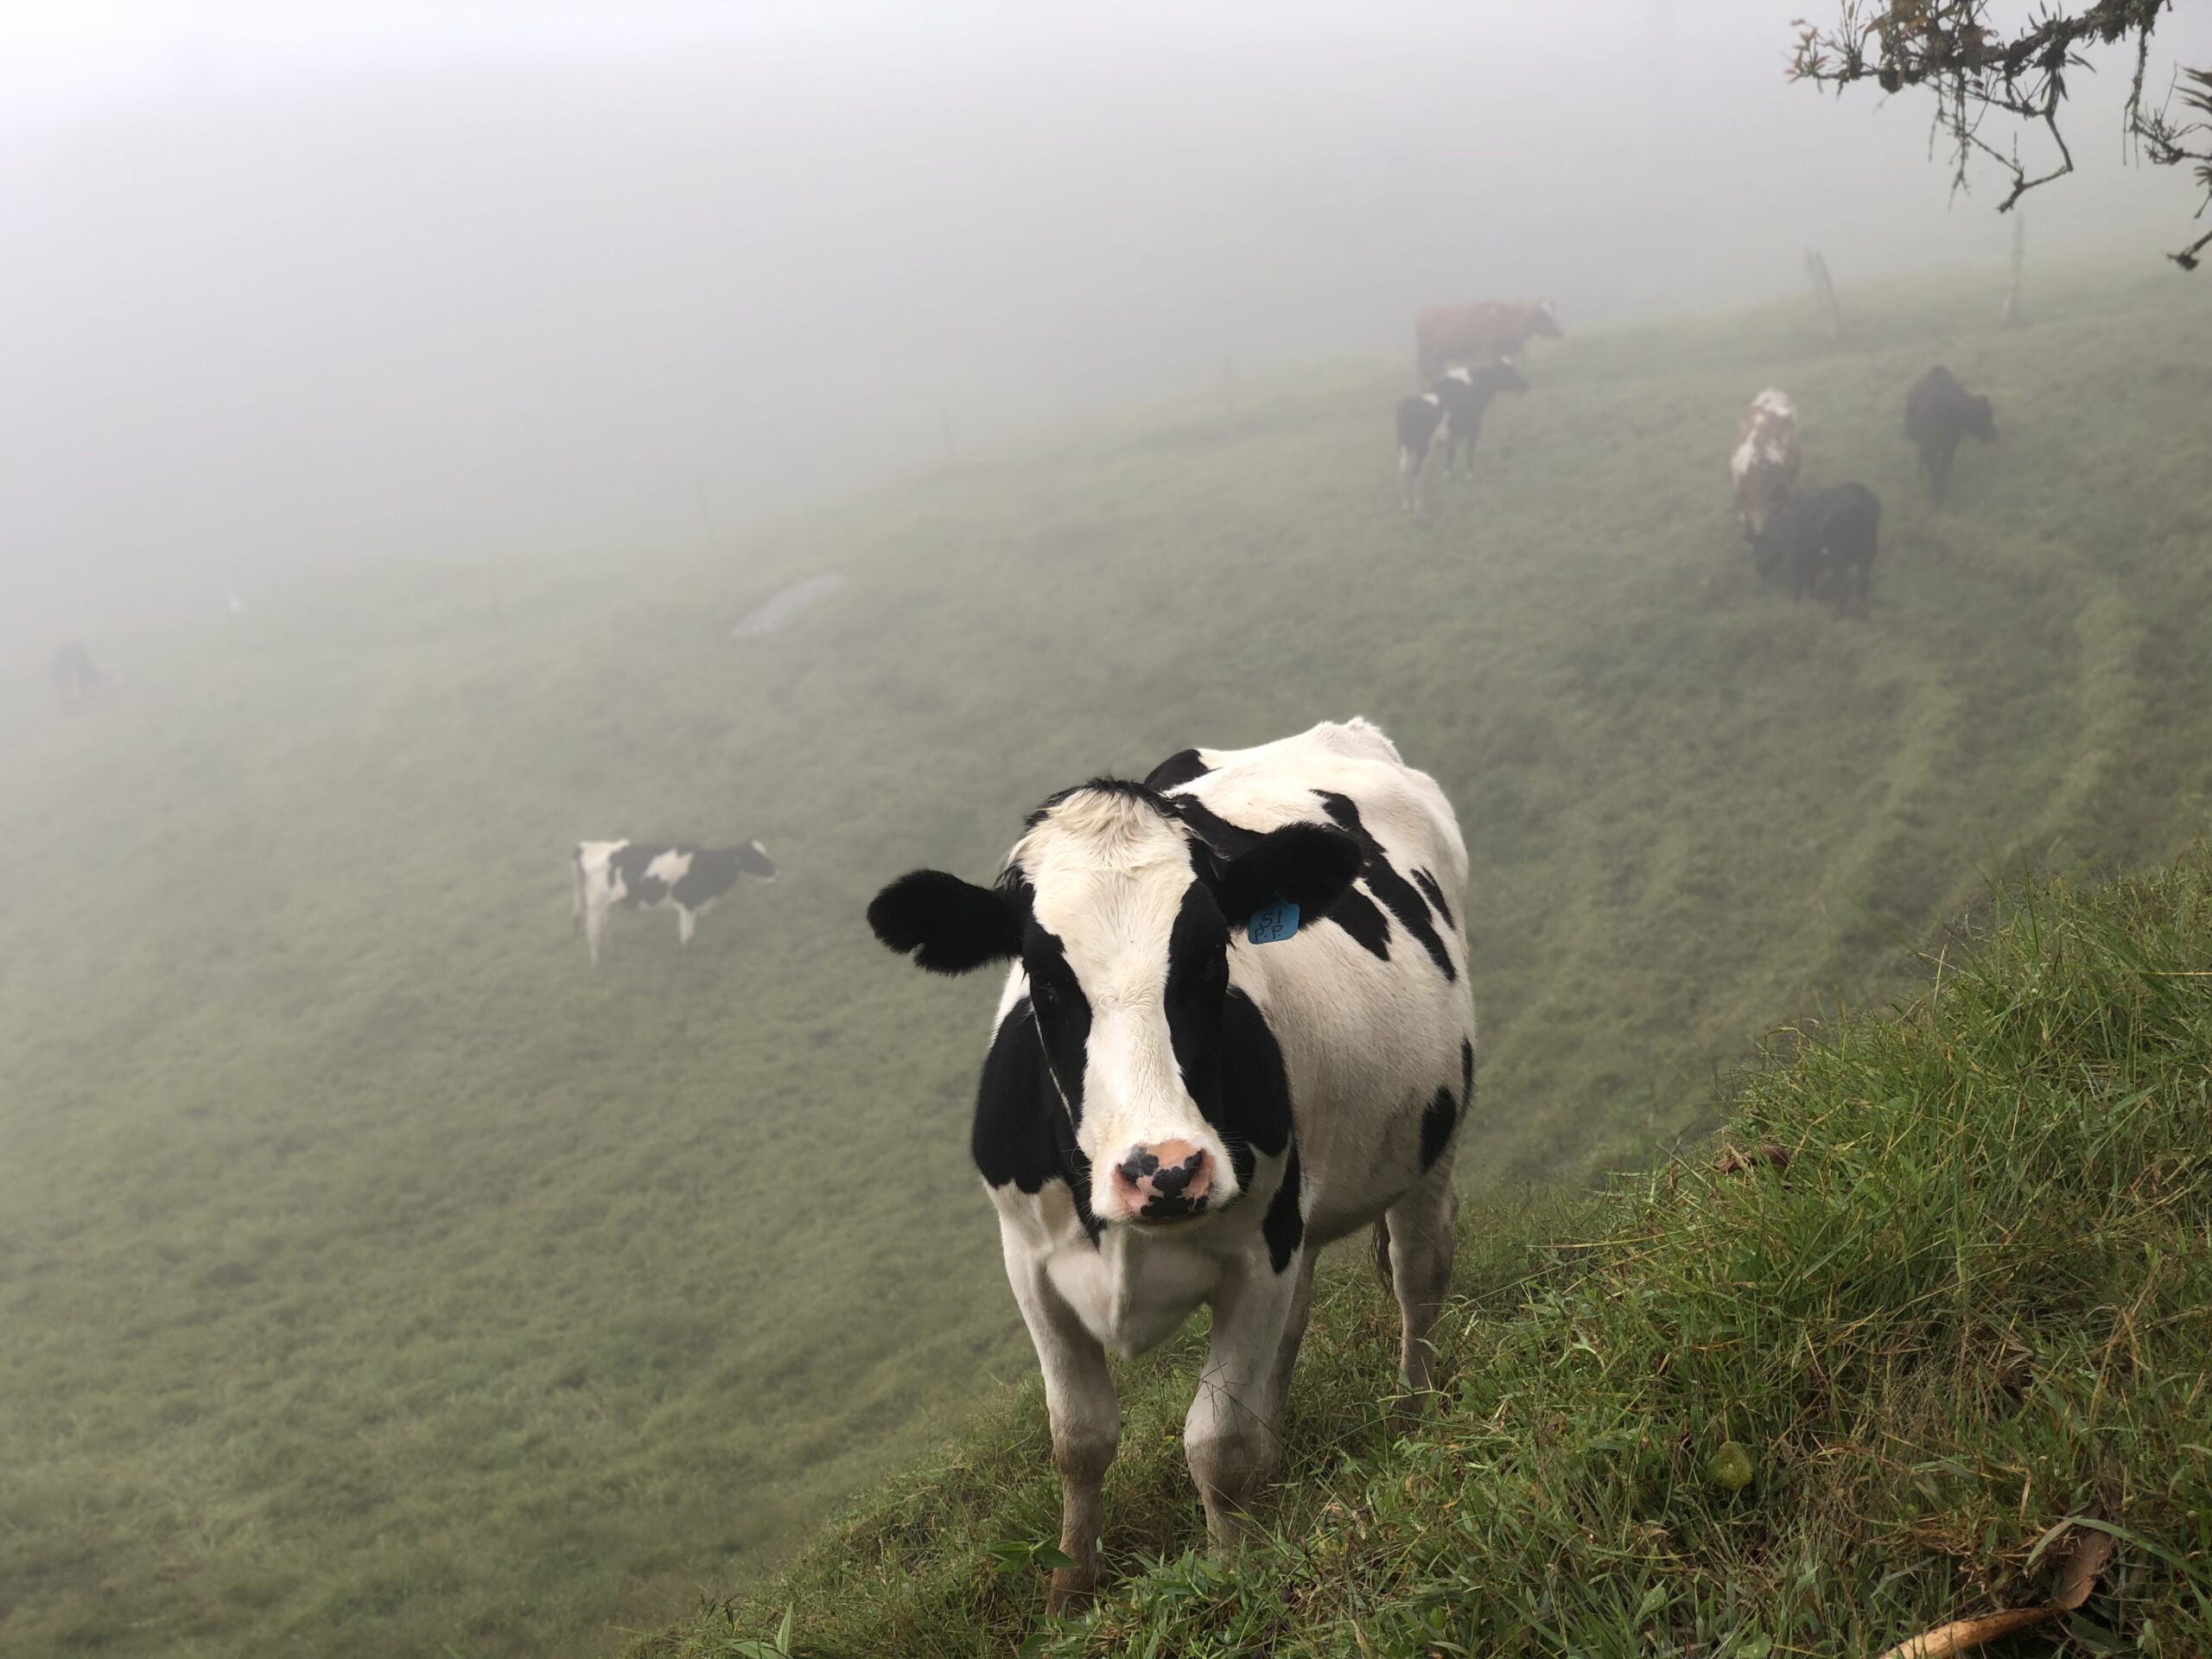  Carne y leche de Colombia se exportara a Cuba